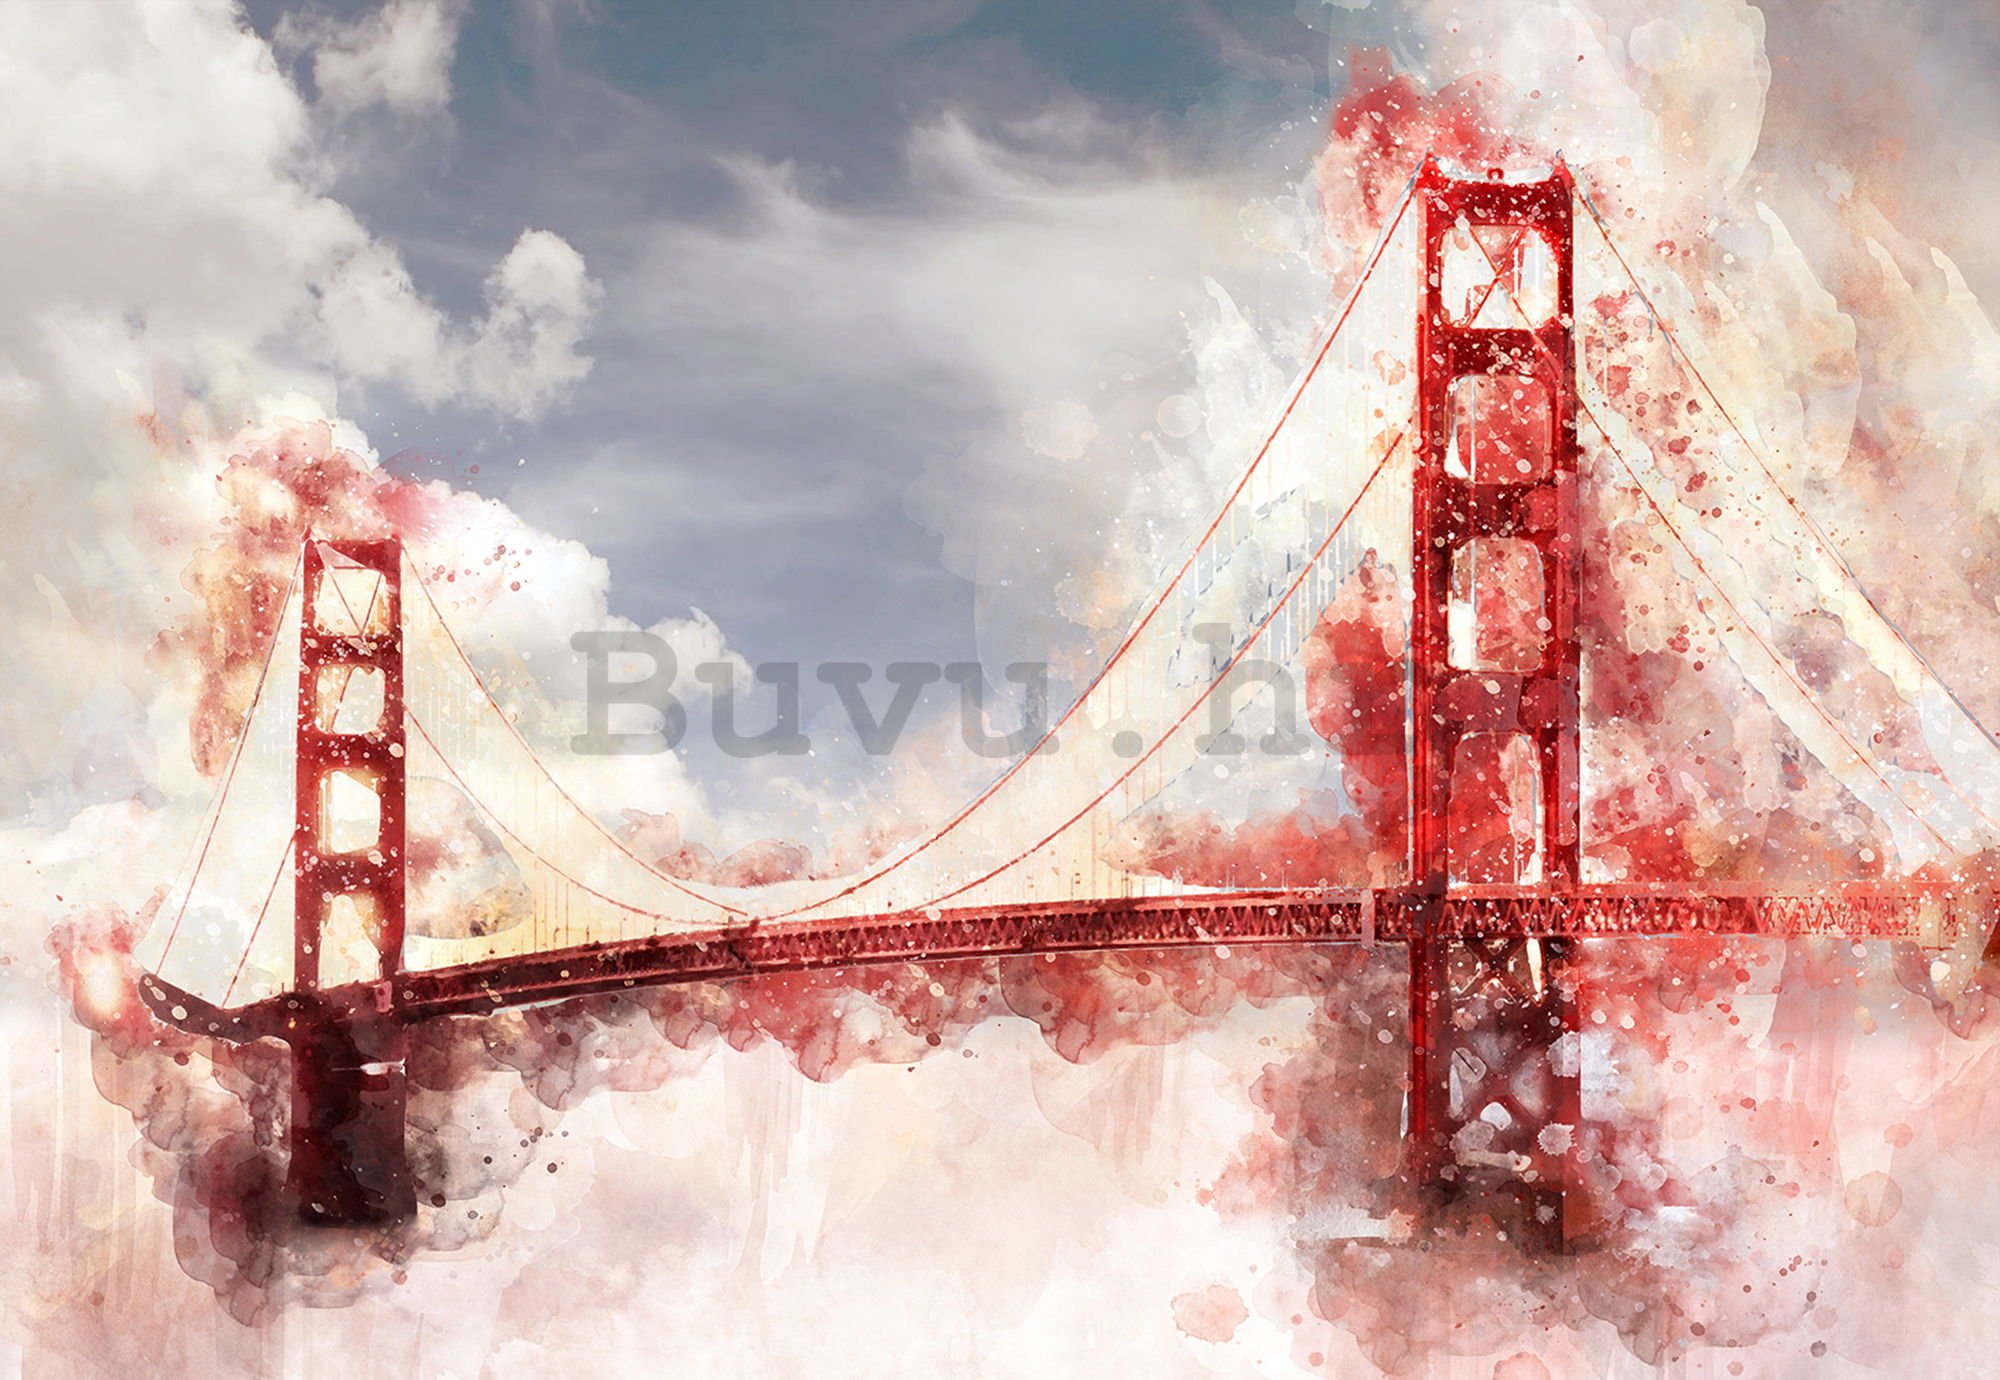 Foto tapeta: Golden Gate Bridge (oslikana) - 254x368 cm